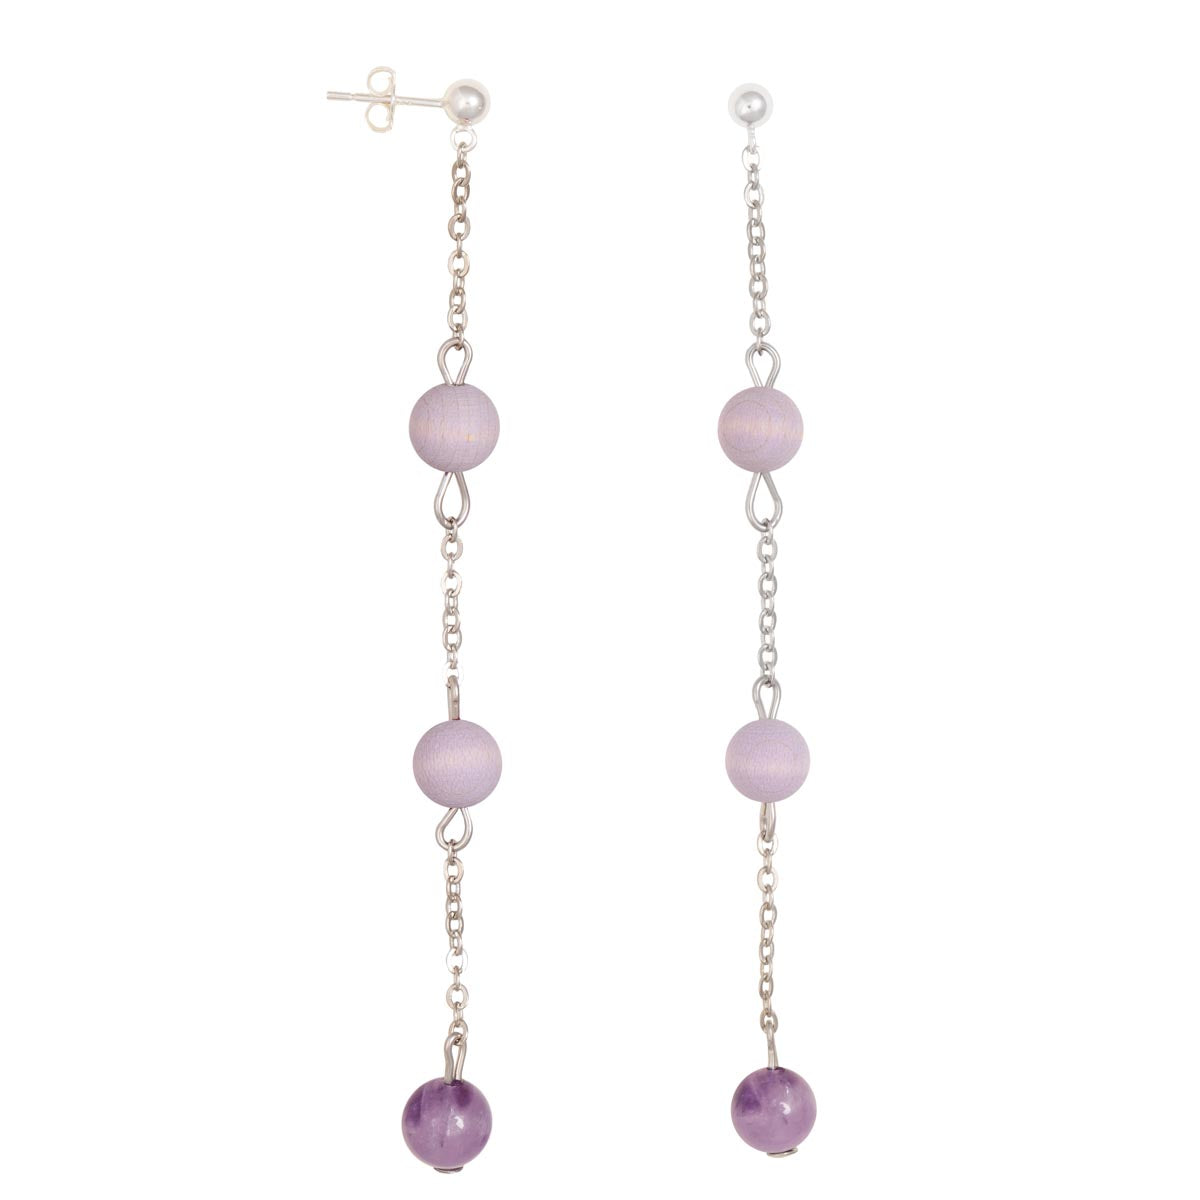 Jade earrings, lavender